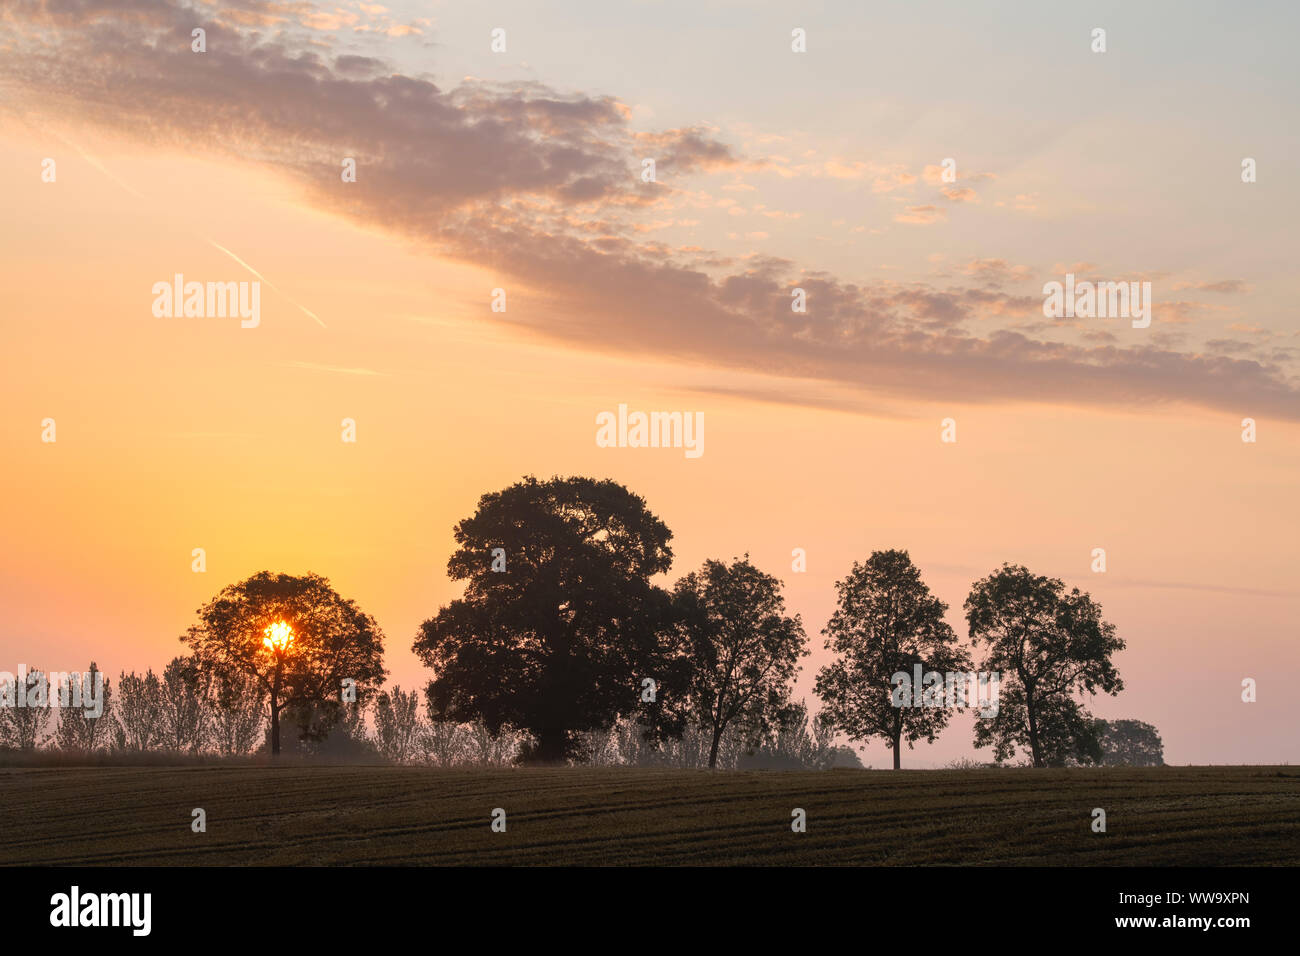 Arbres au lever du soleil dans la campagne de l'Oxfordshire. Clifton, Oxfordshire, Angleterre. Silhouette Banque D'Images